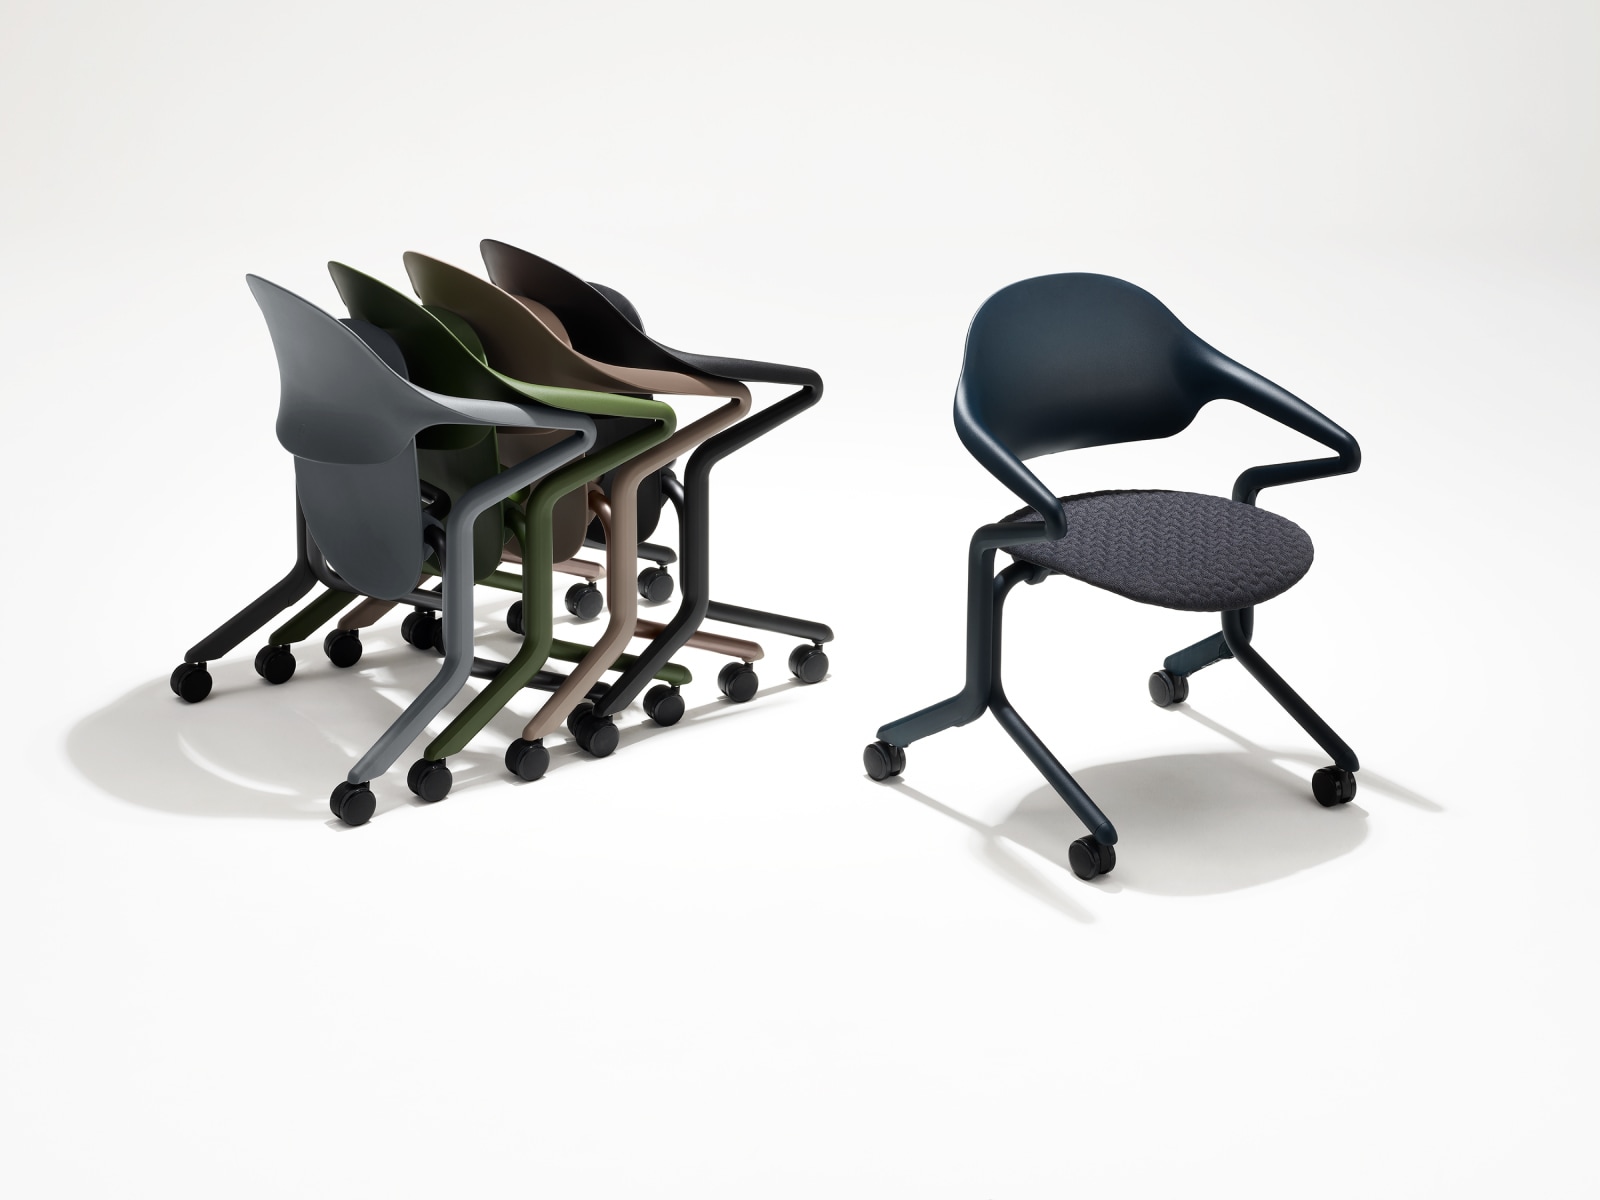 Quatre sièges gigognes Fuld dans différentes couleurs et finitions, imbriqués, à côté d'un siège Fuld seul, en finition Nightfall et textile 3D Knit.